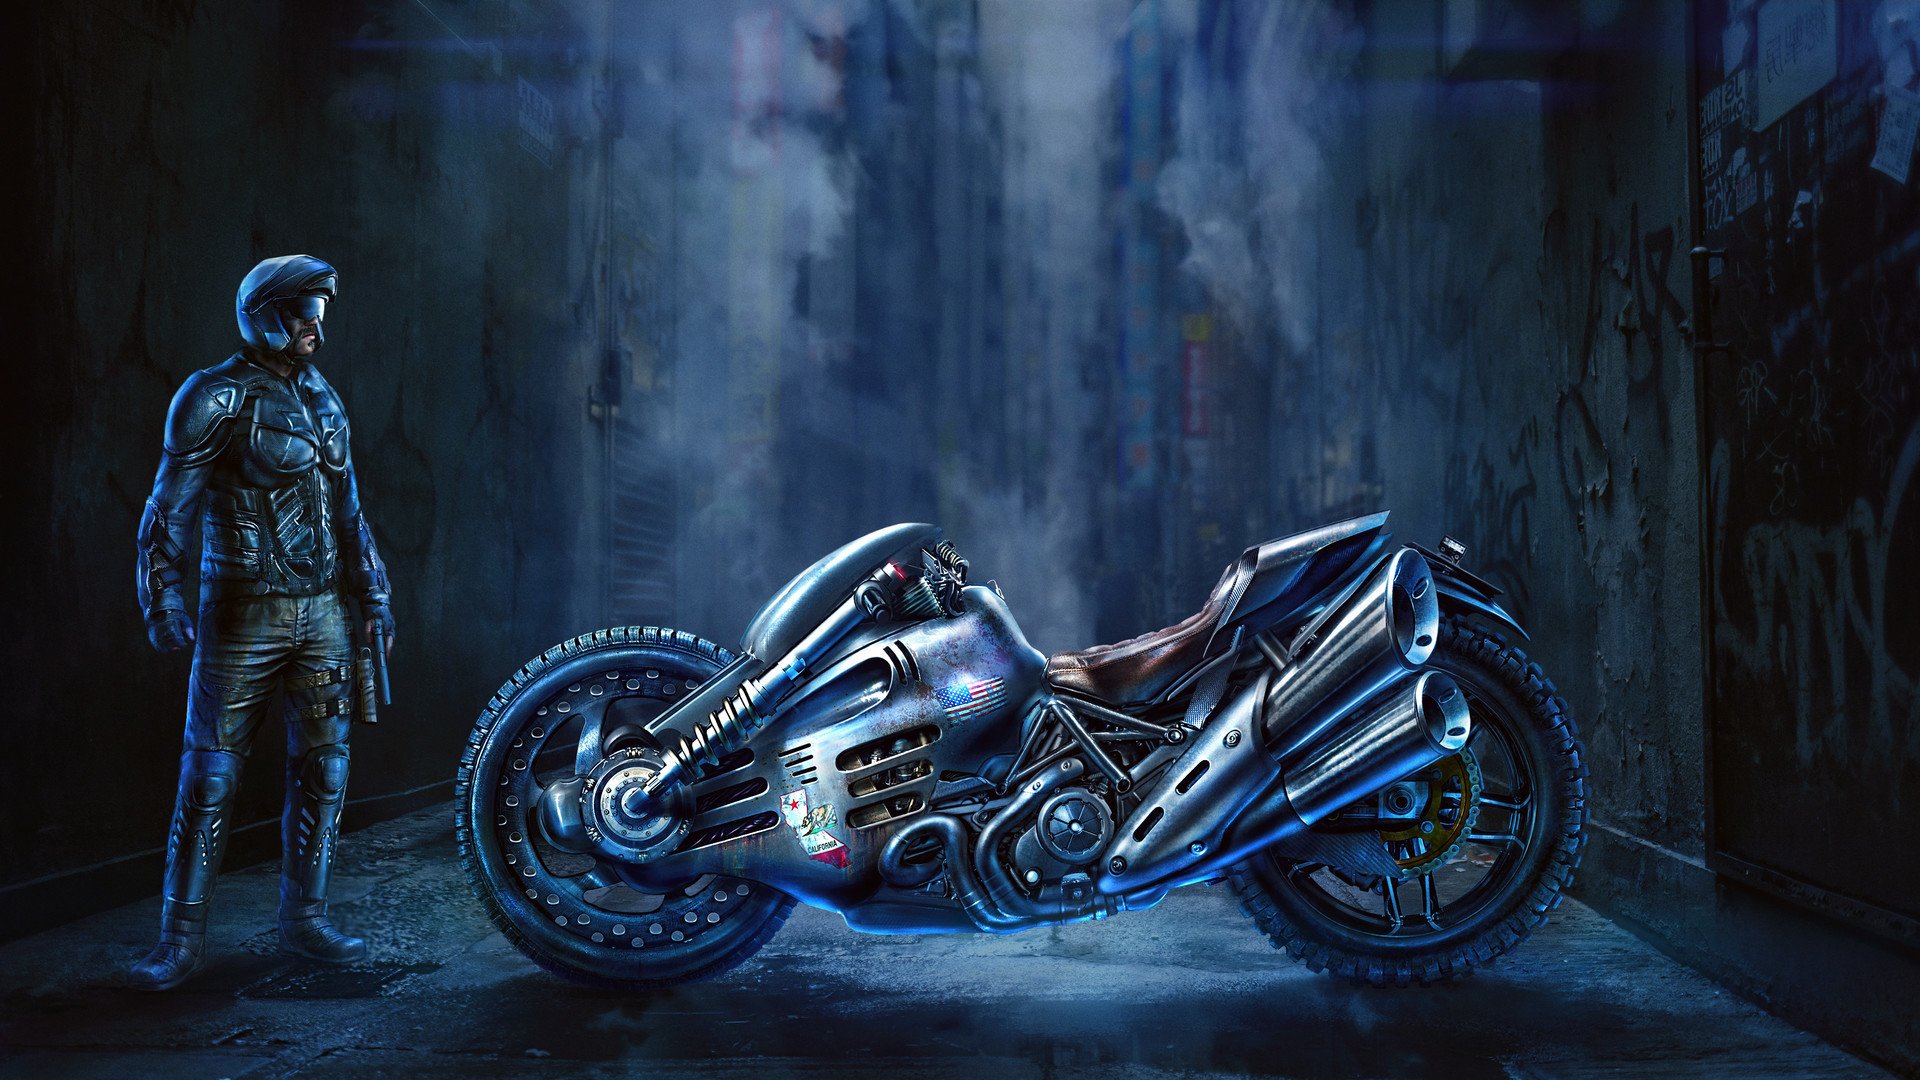 Cyberpunk motorcycle art фото 76